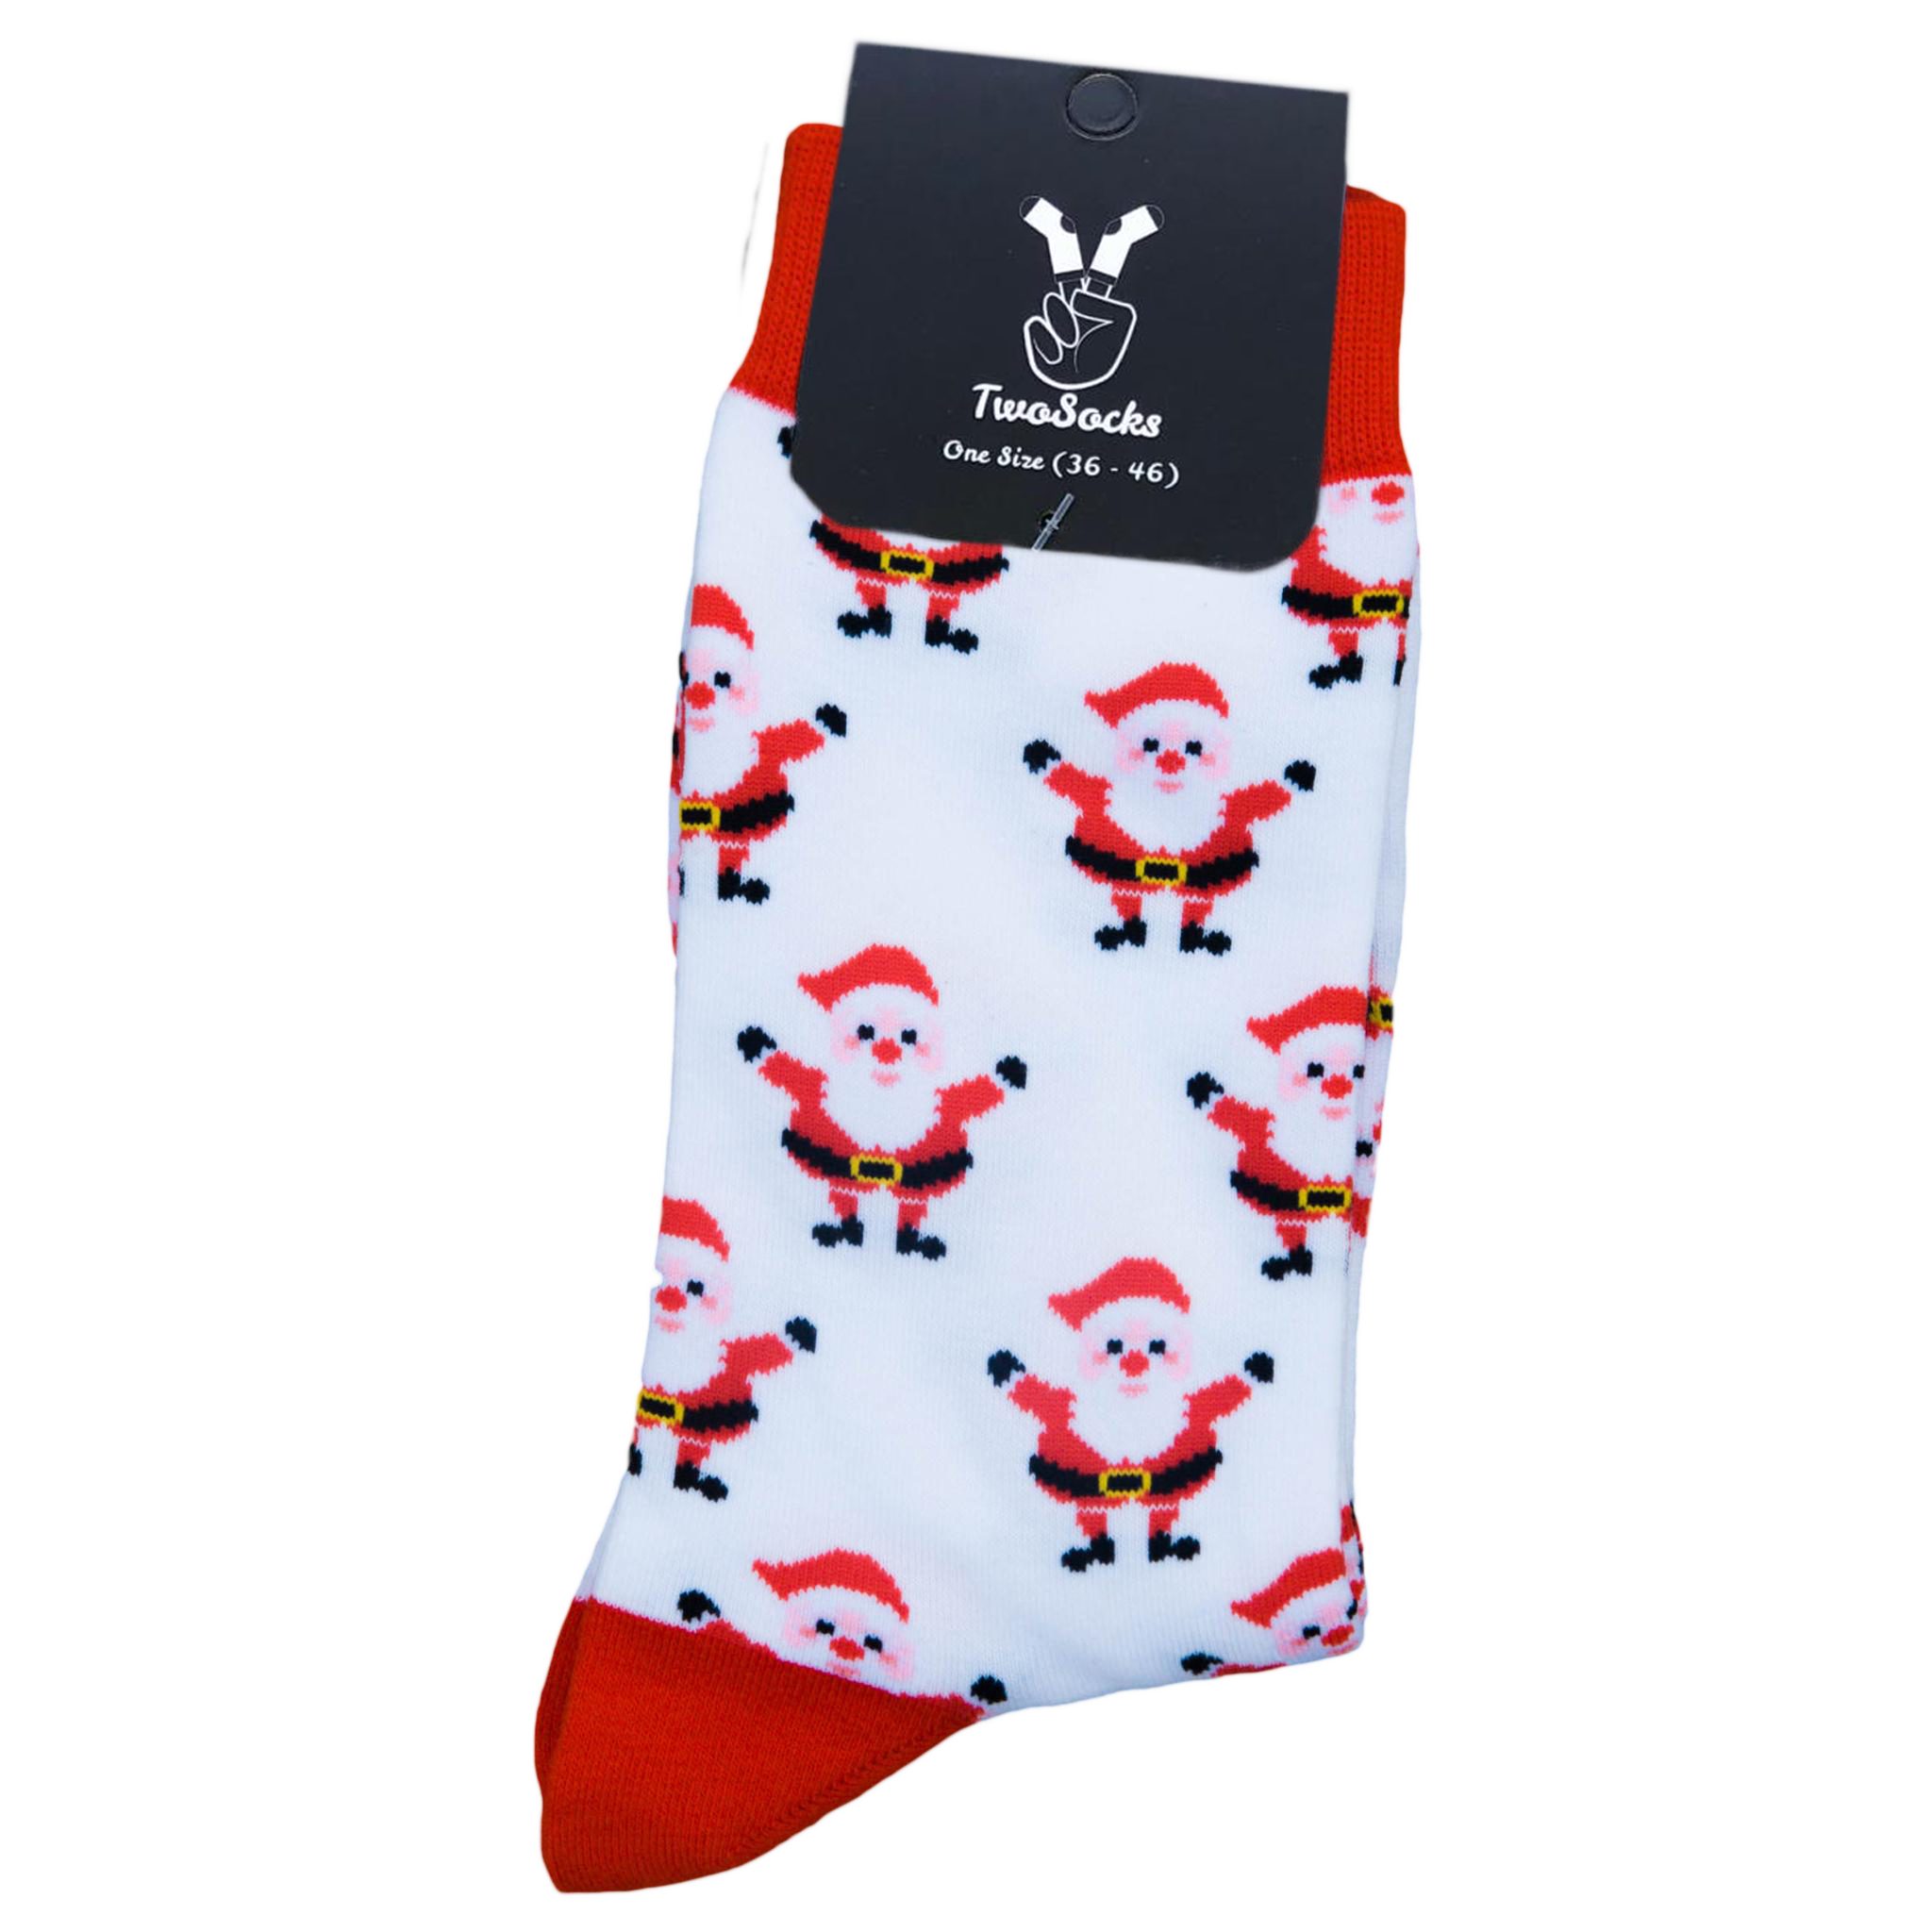 Damen witzige Socken, 2er-Pack (Set, Paar) Einheitsgröße & Freizeitsocken Herren 2 Weihnachtssocken TwoSocks